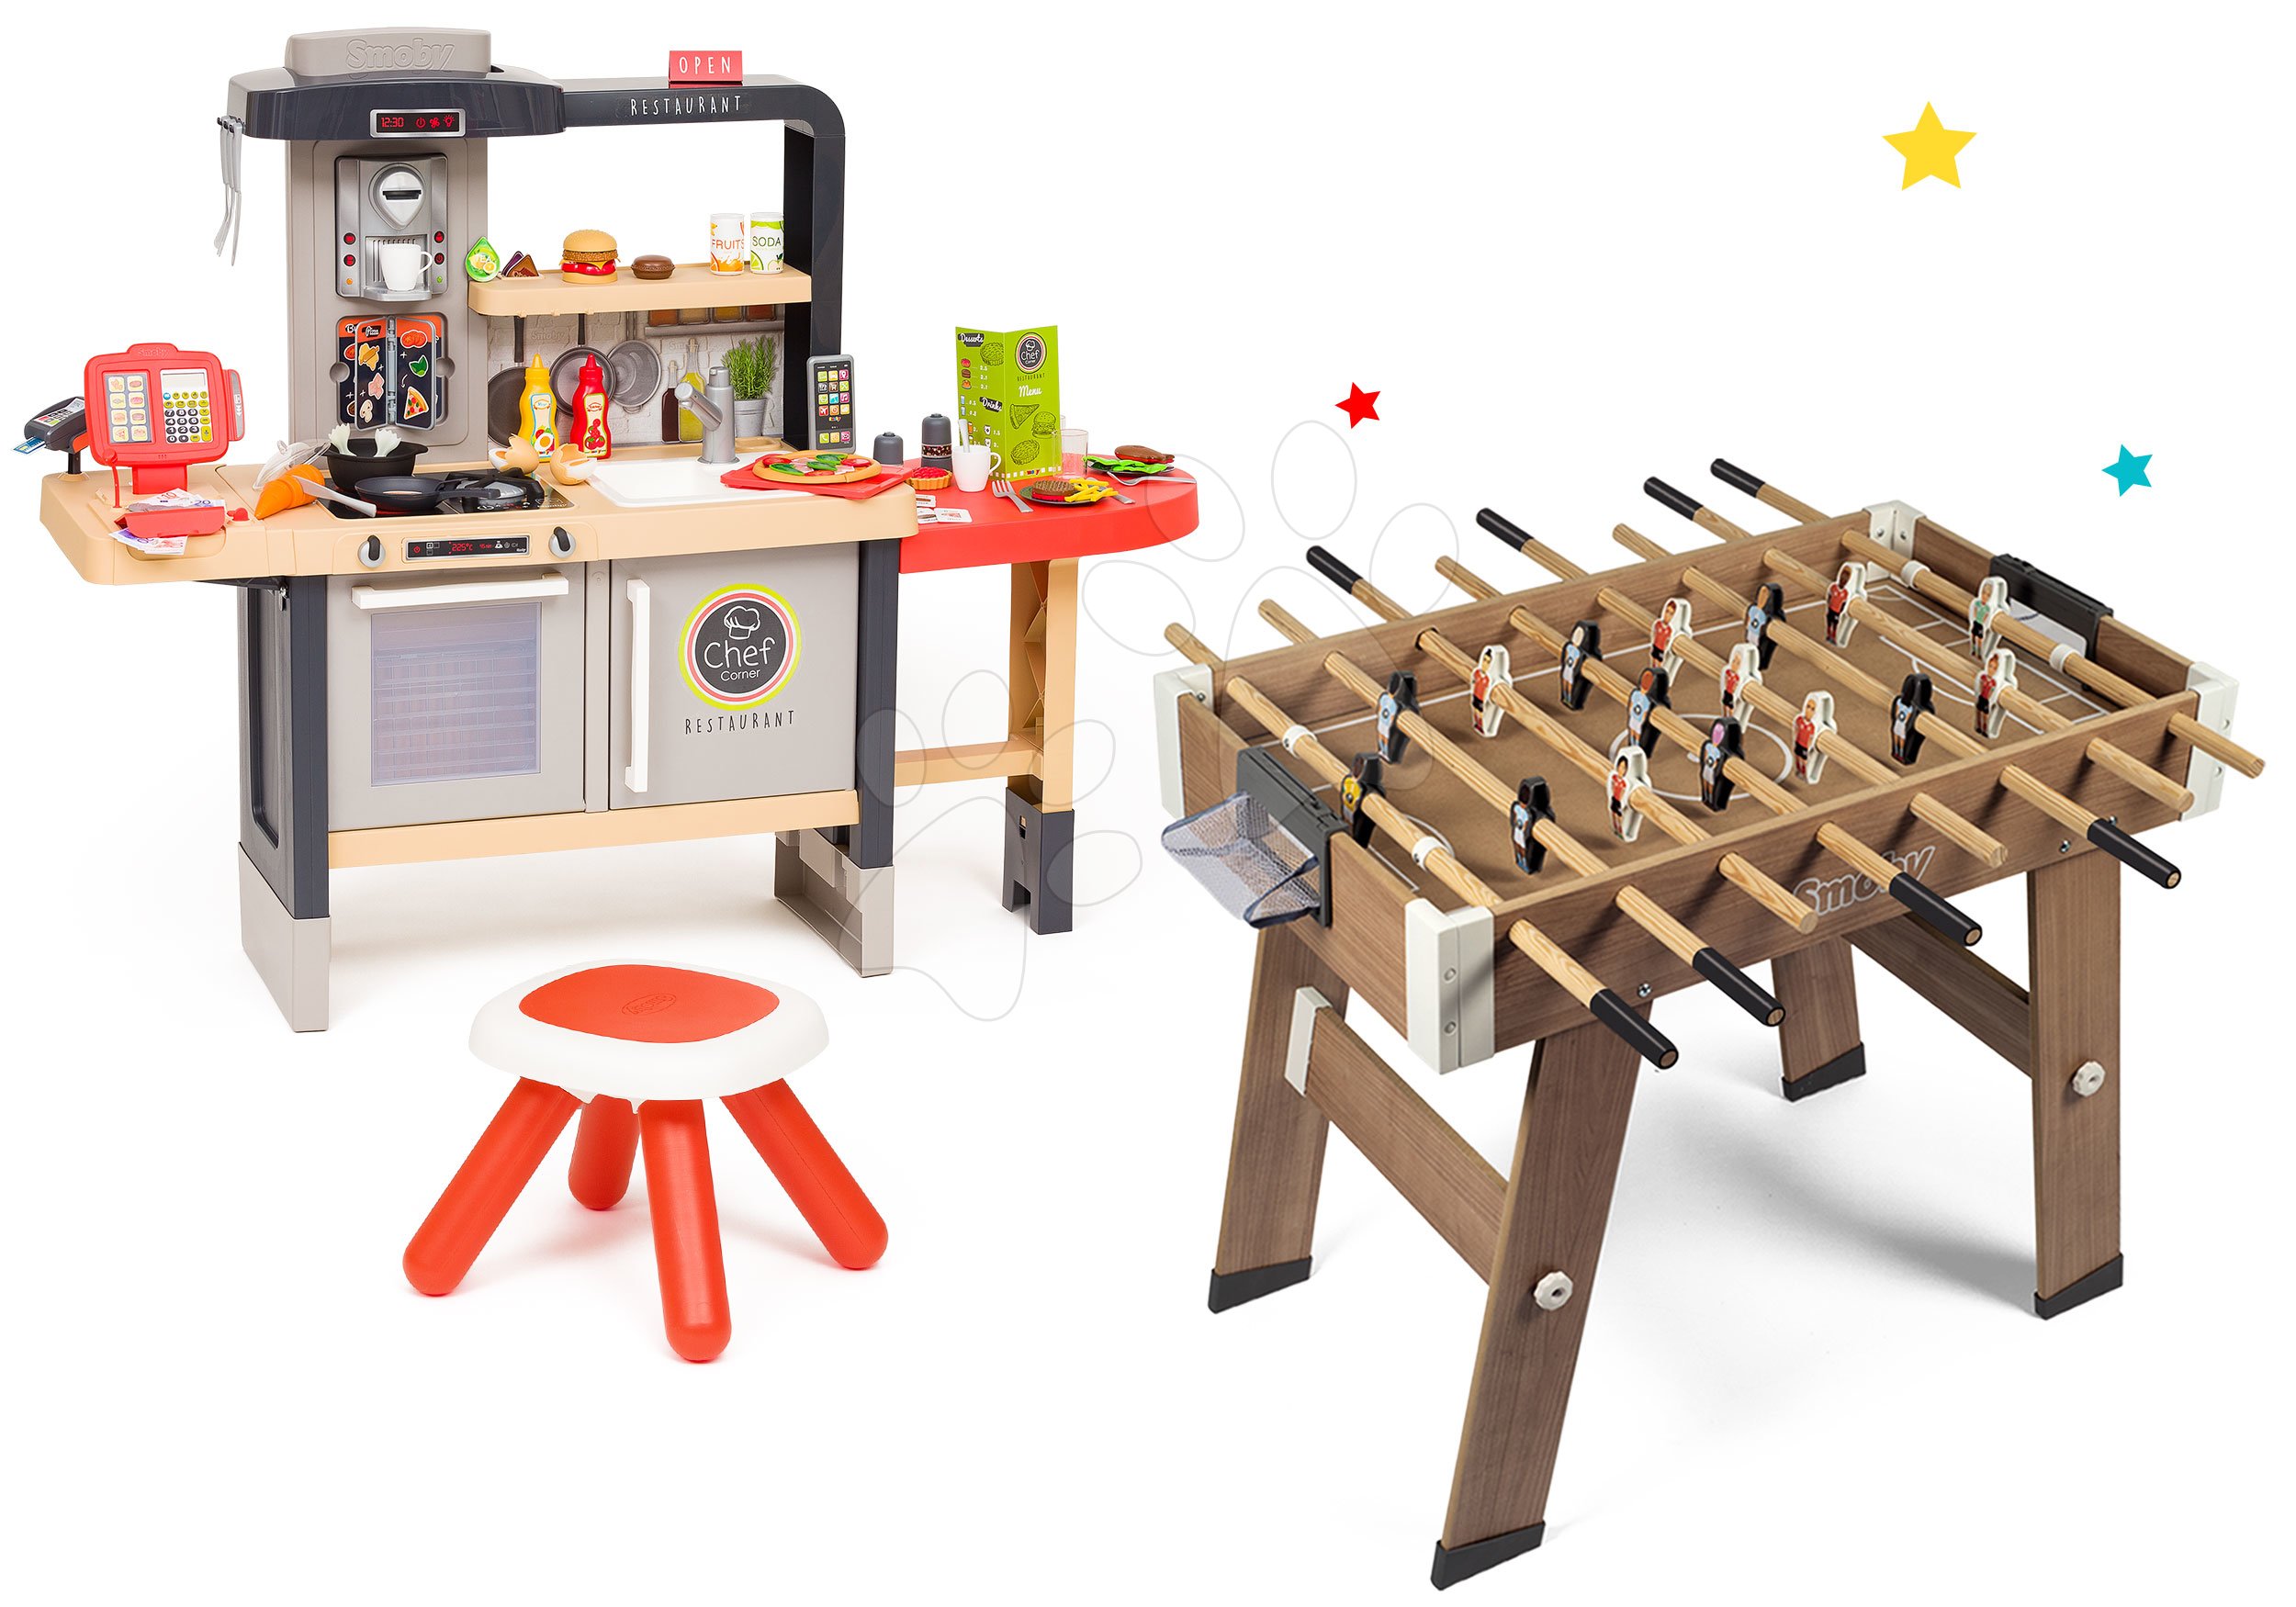 Kuchyňky pro děti sety - Set restaurace s elektronickou kuchyňkou Chef Corner Restaurant Smoby s dřevěným fotbalovým stolem